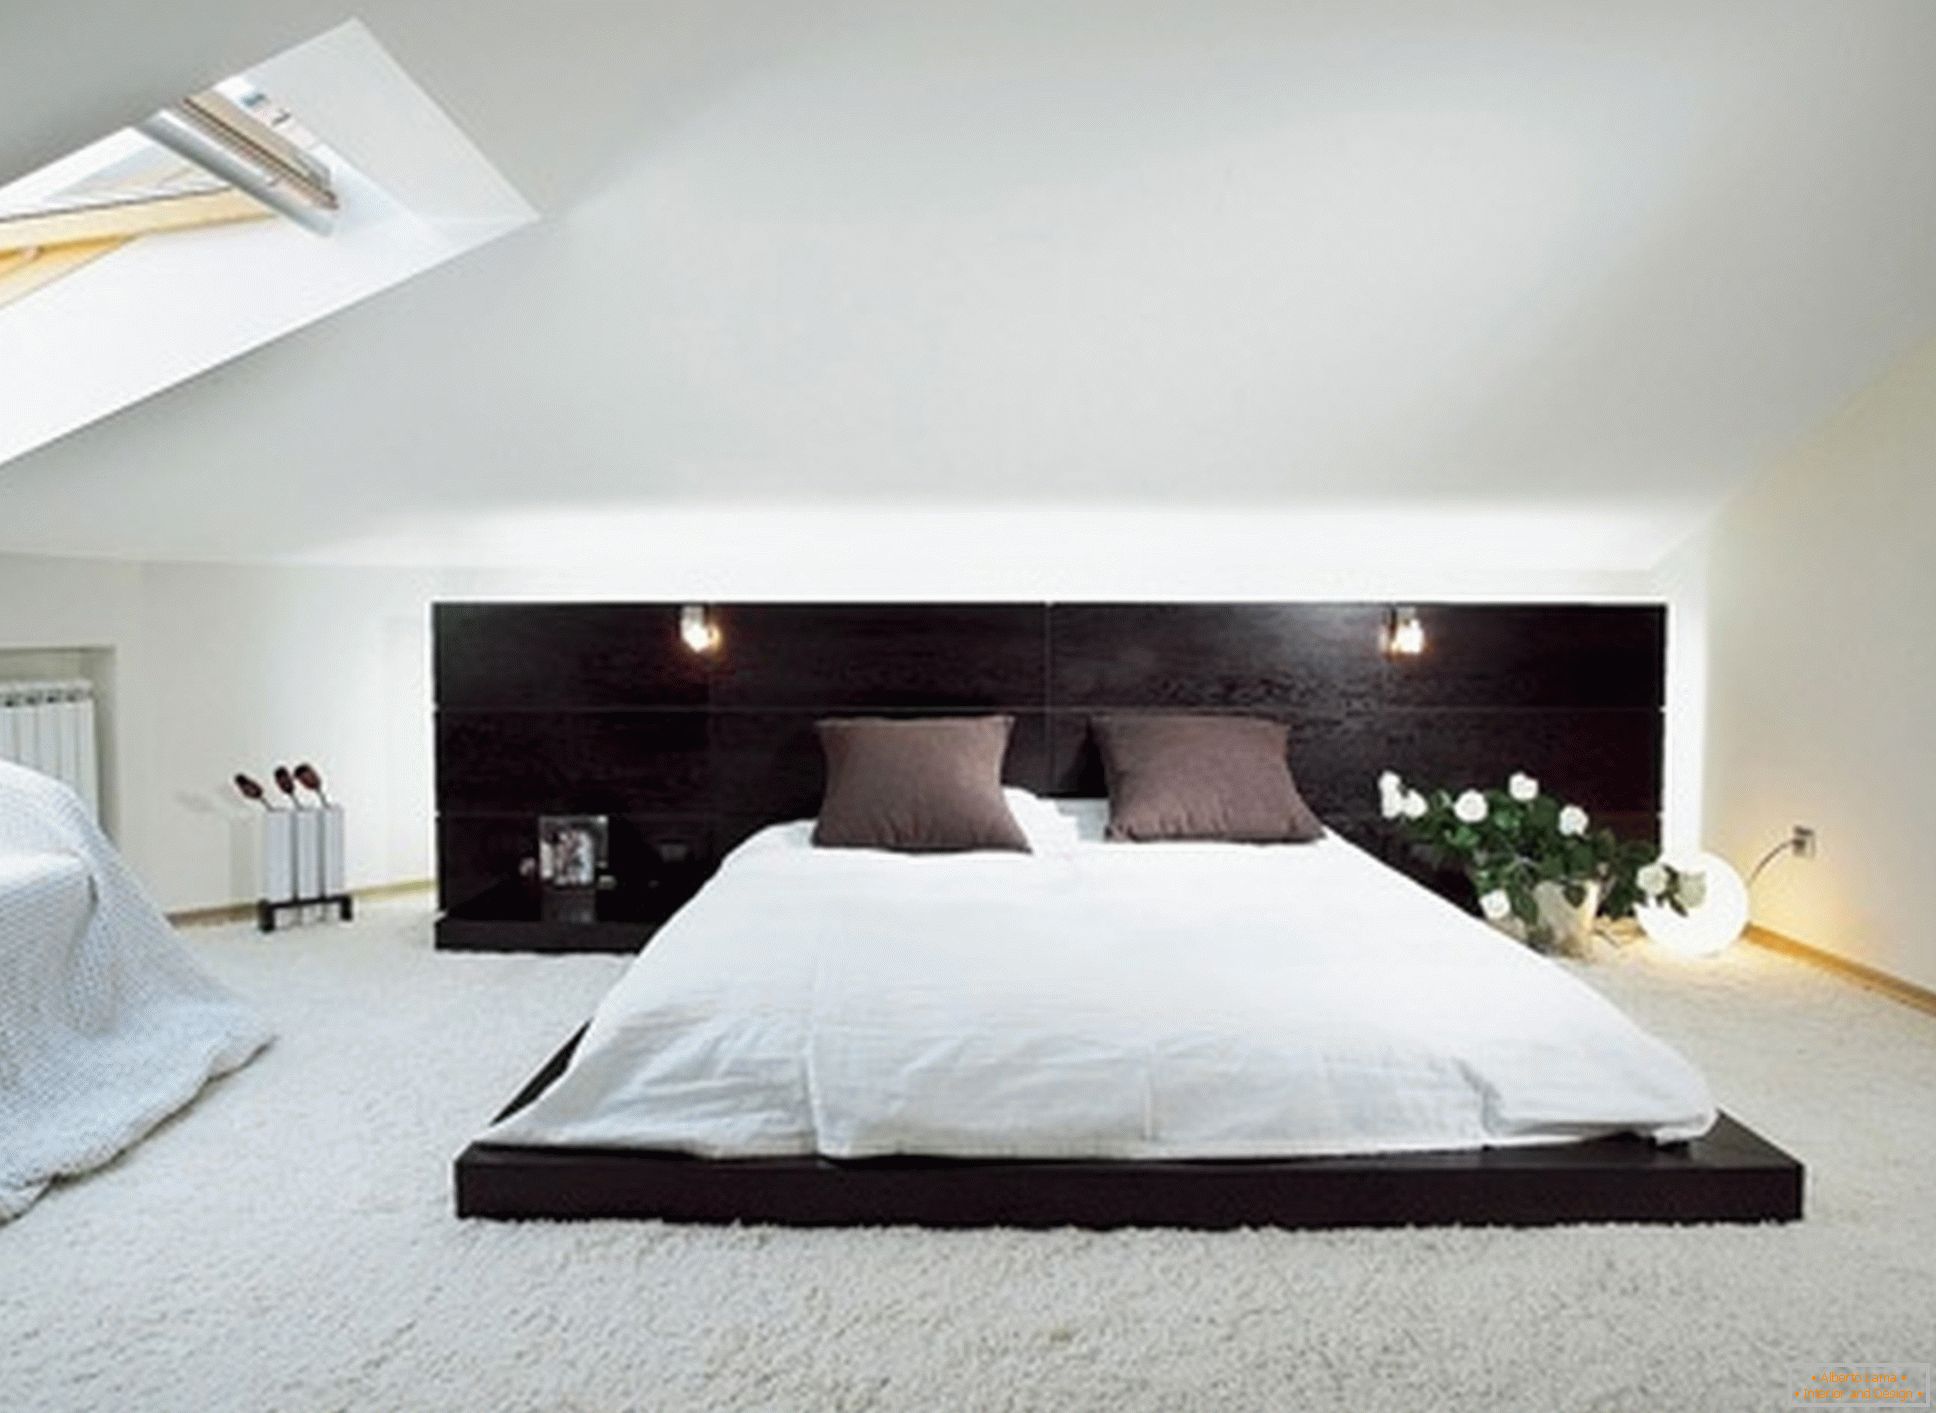 Luxusní ložnice ve stylu minimalismu - příklad úspěšného návrhu malého pokoje v podkroví.